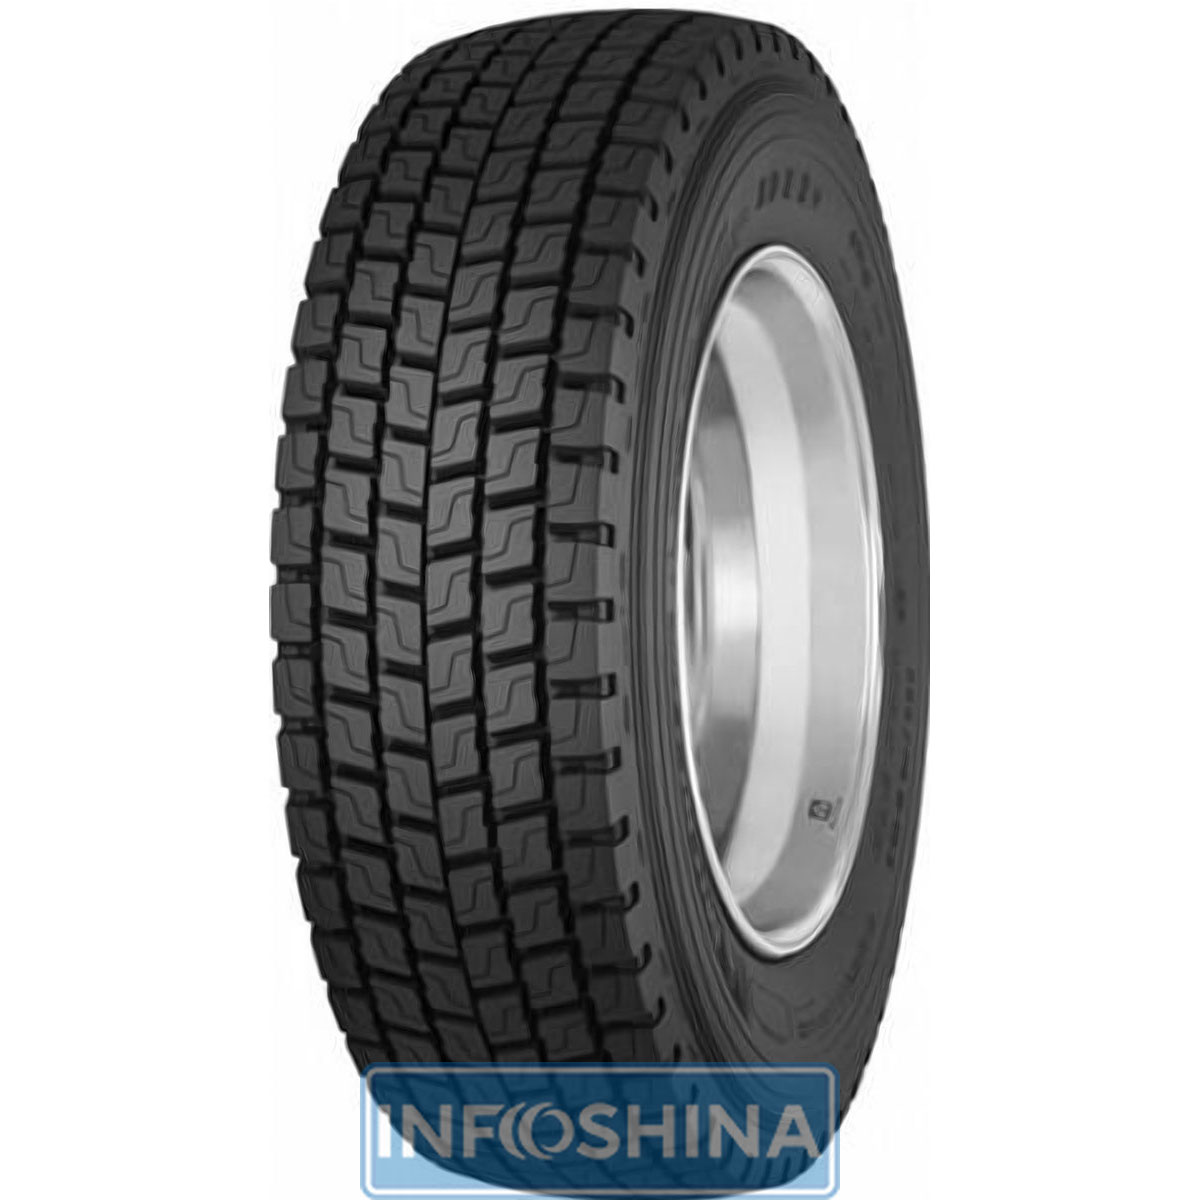 Купить шины Michelin XDE2+ (ведущая ось) 285/70 R19.5 144/142M